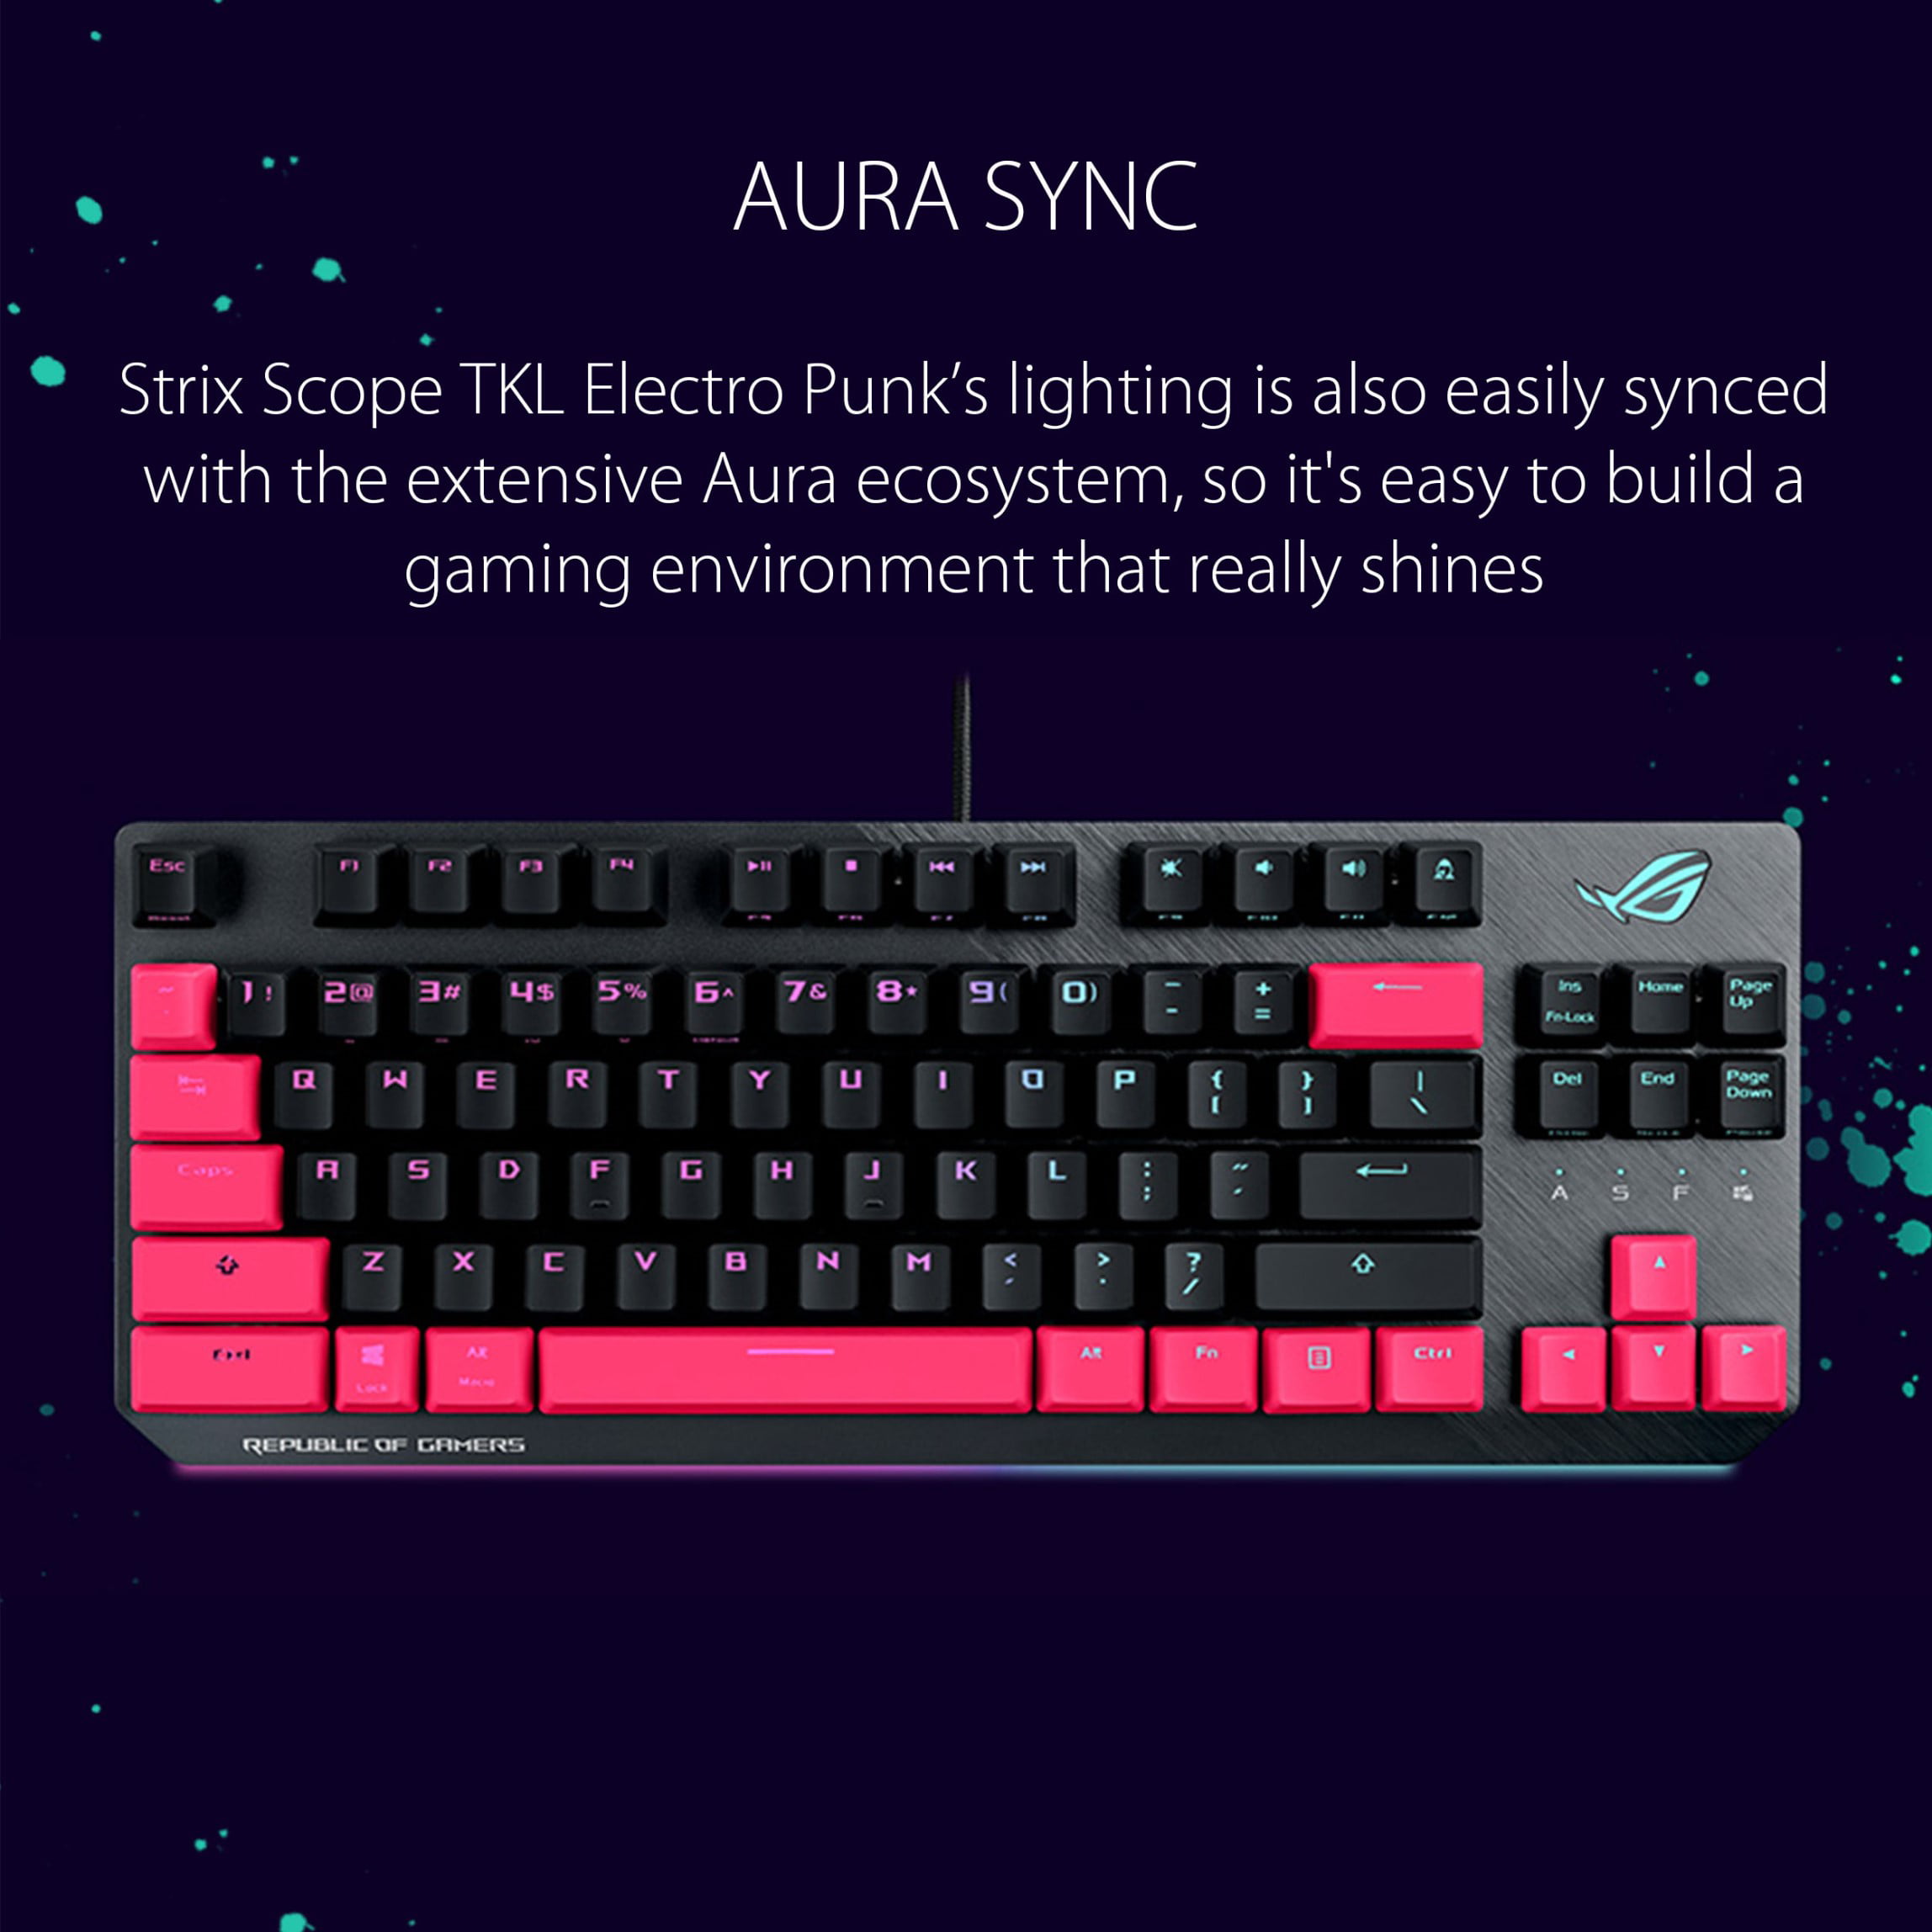 Asus ROG Strix Scope TKL Electro Punk Gaming Keyboard 